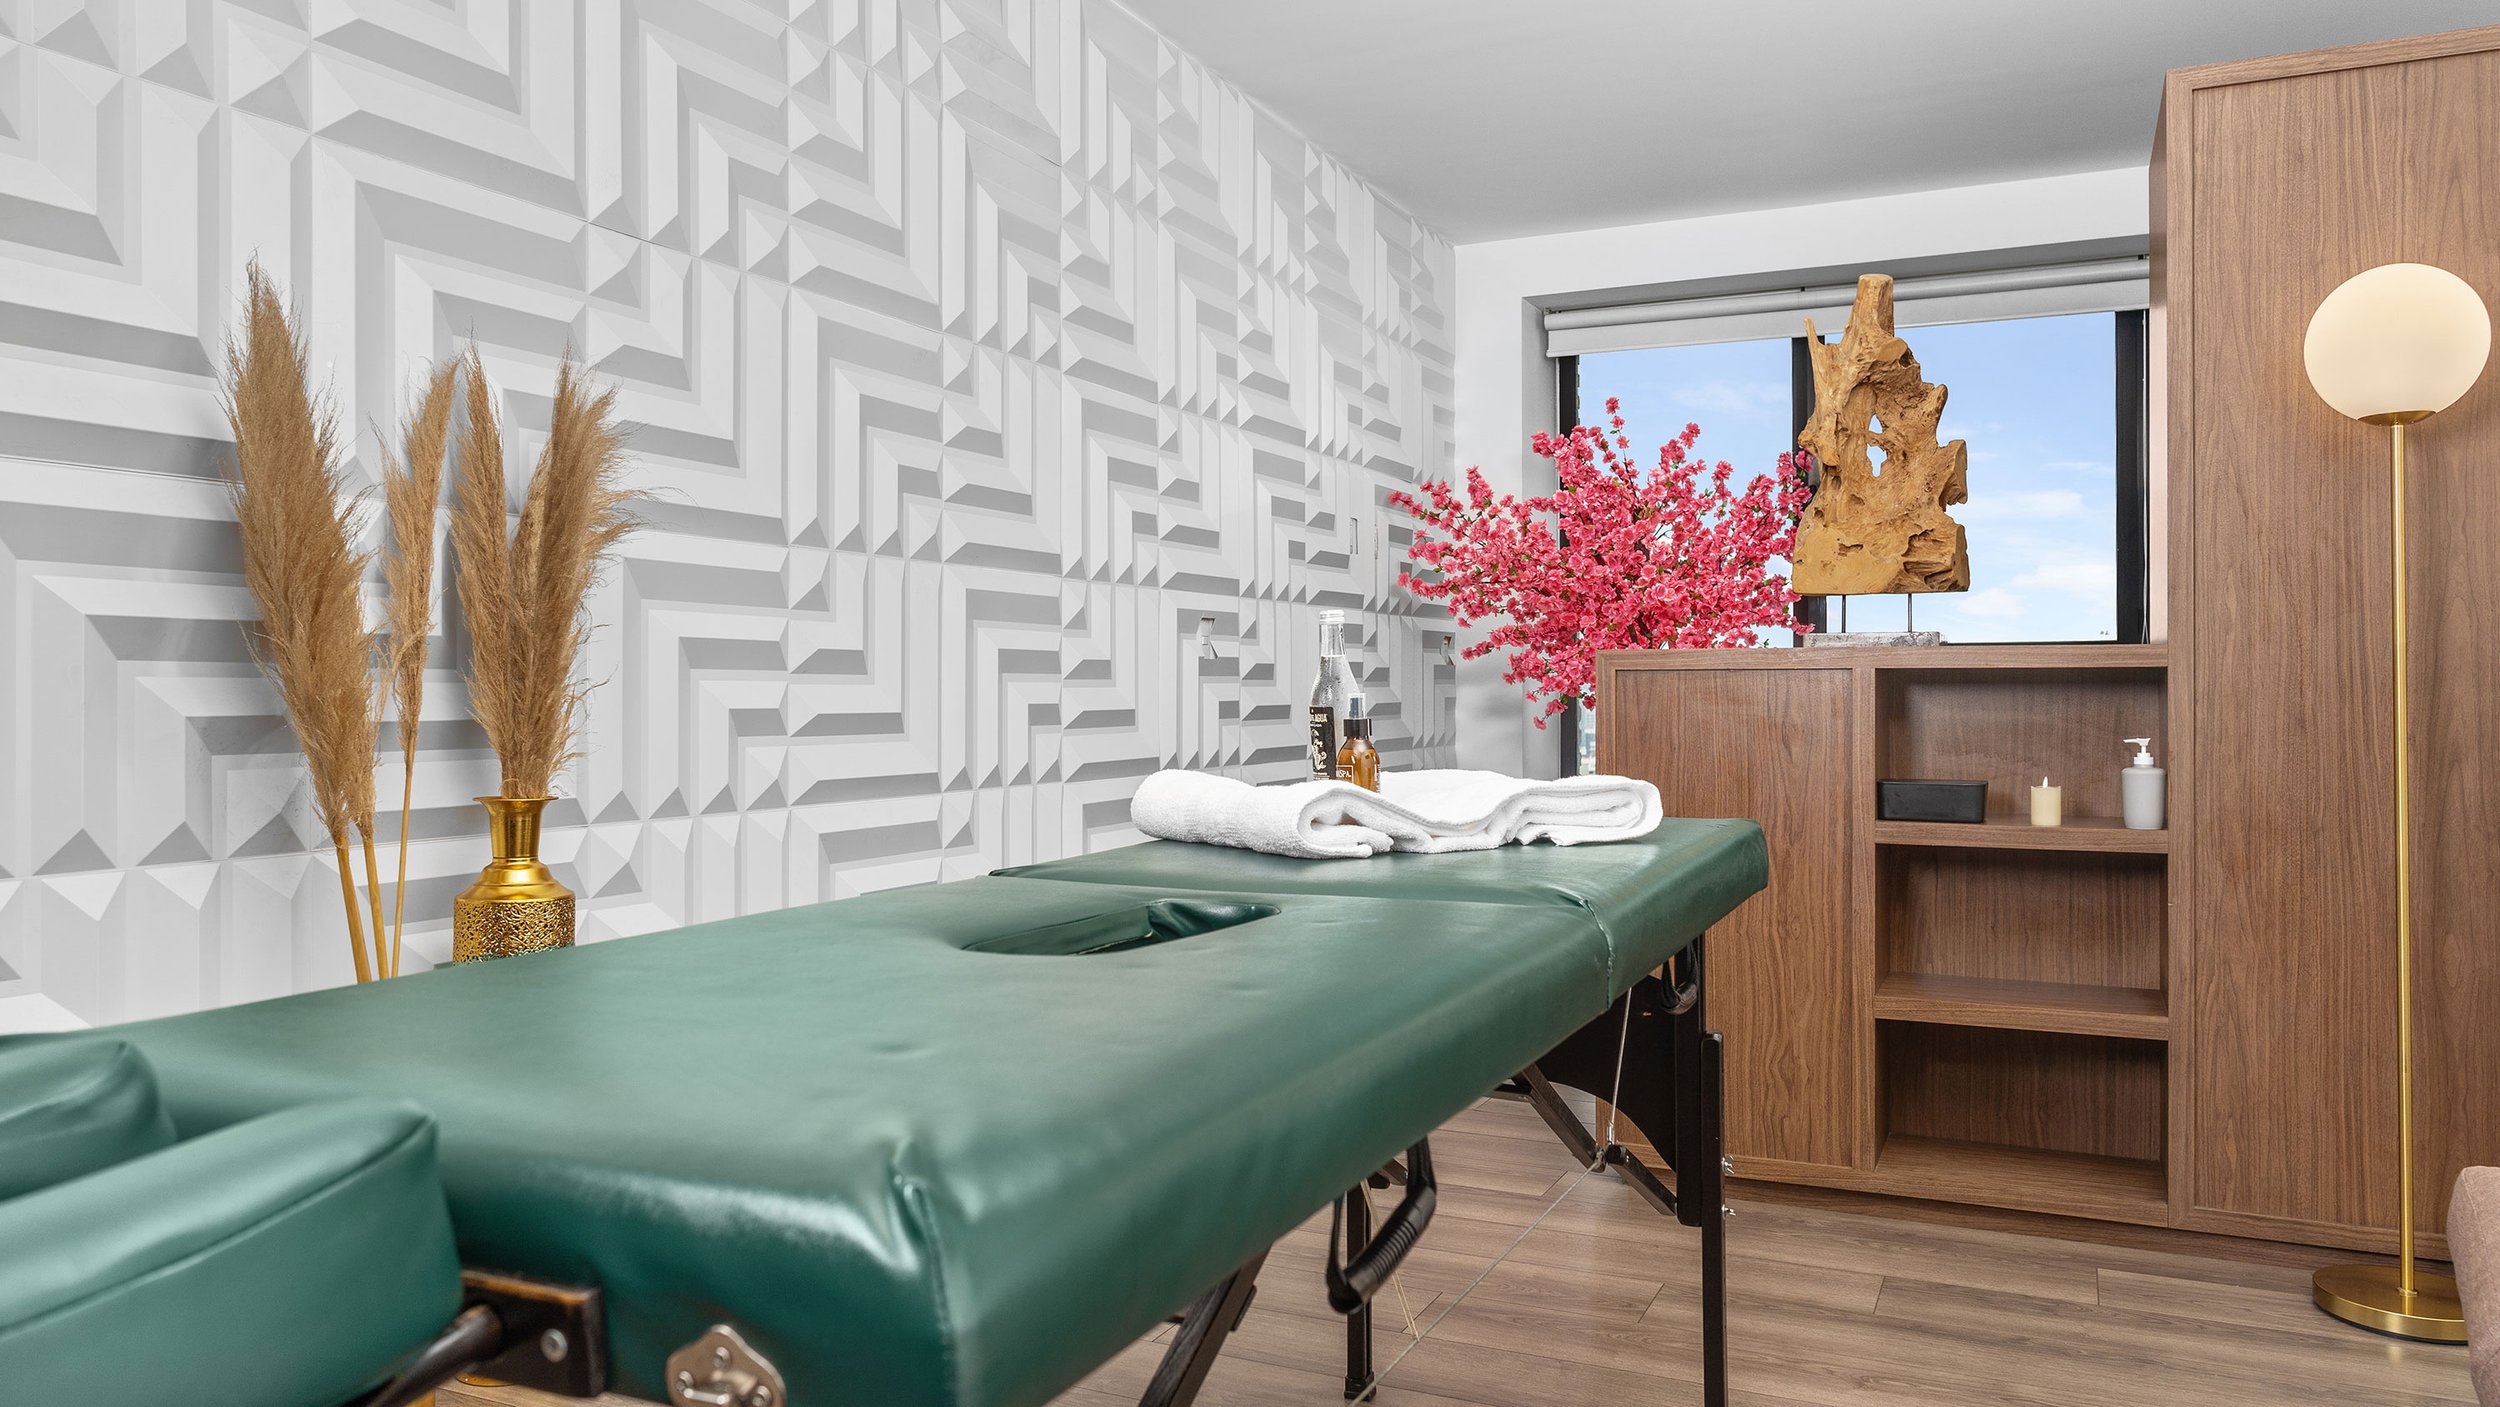 Luxurious massage studio